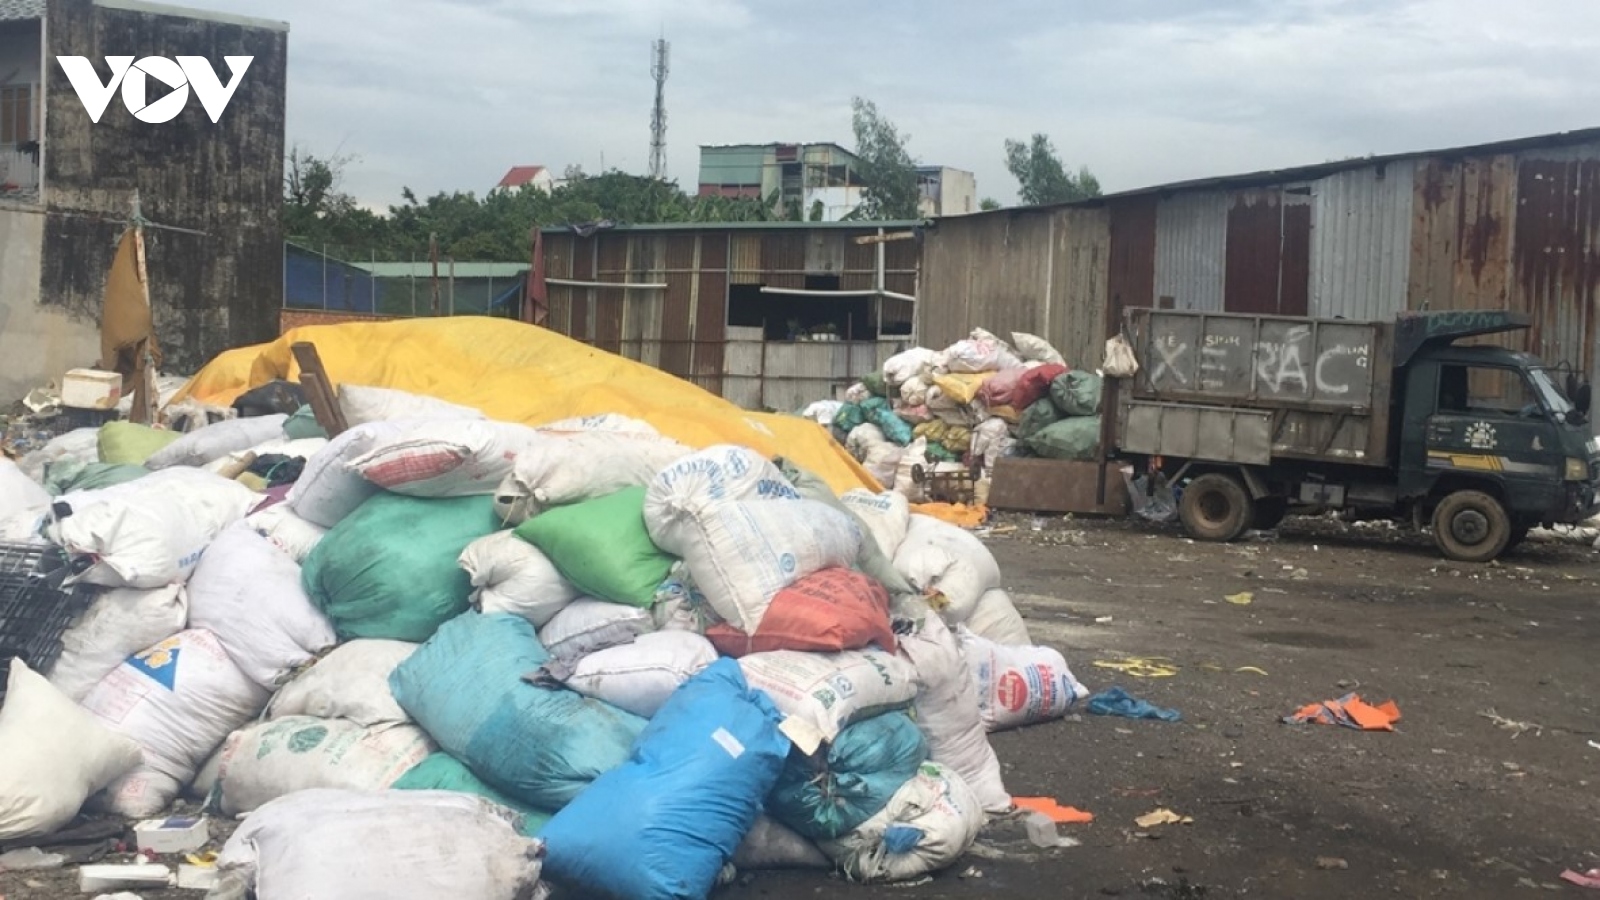 TPHCM tăng phí thu gom rác, người dân bất ngờ, các đơn vị thu gom kêu khó